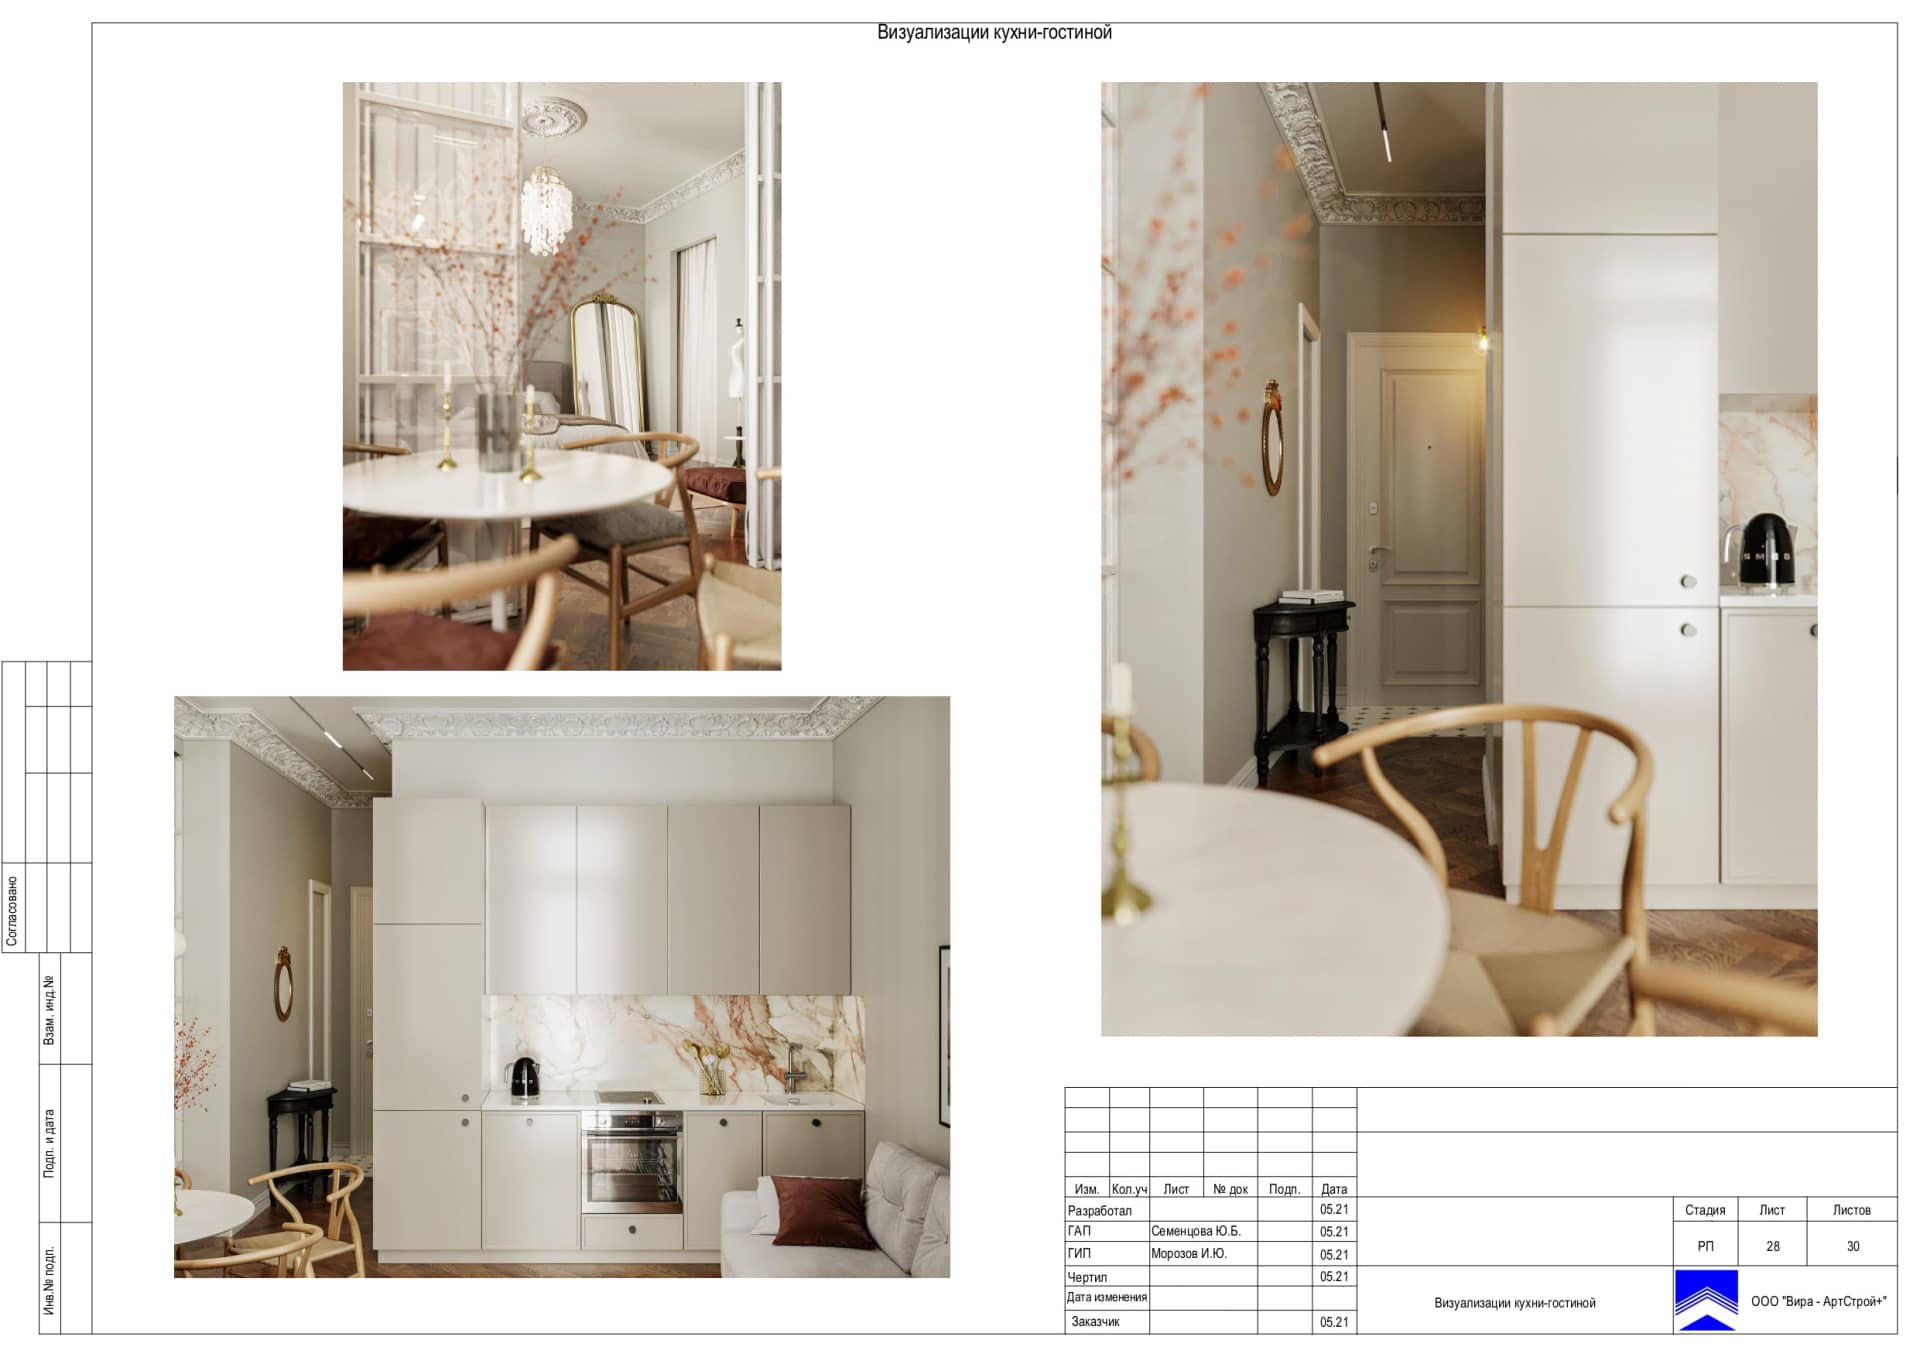 Визуализации кухни гостиной, квартира 50 м² в ЖК «Счастье на Соколе»